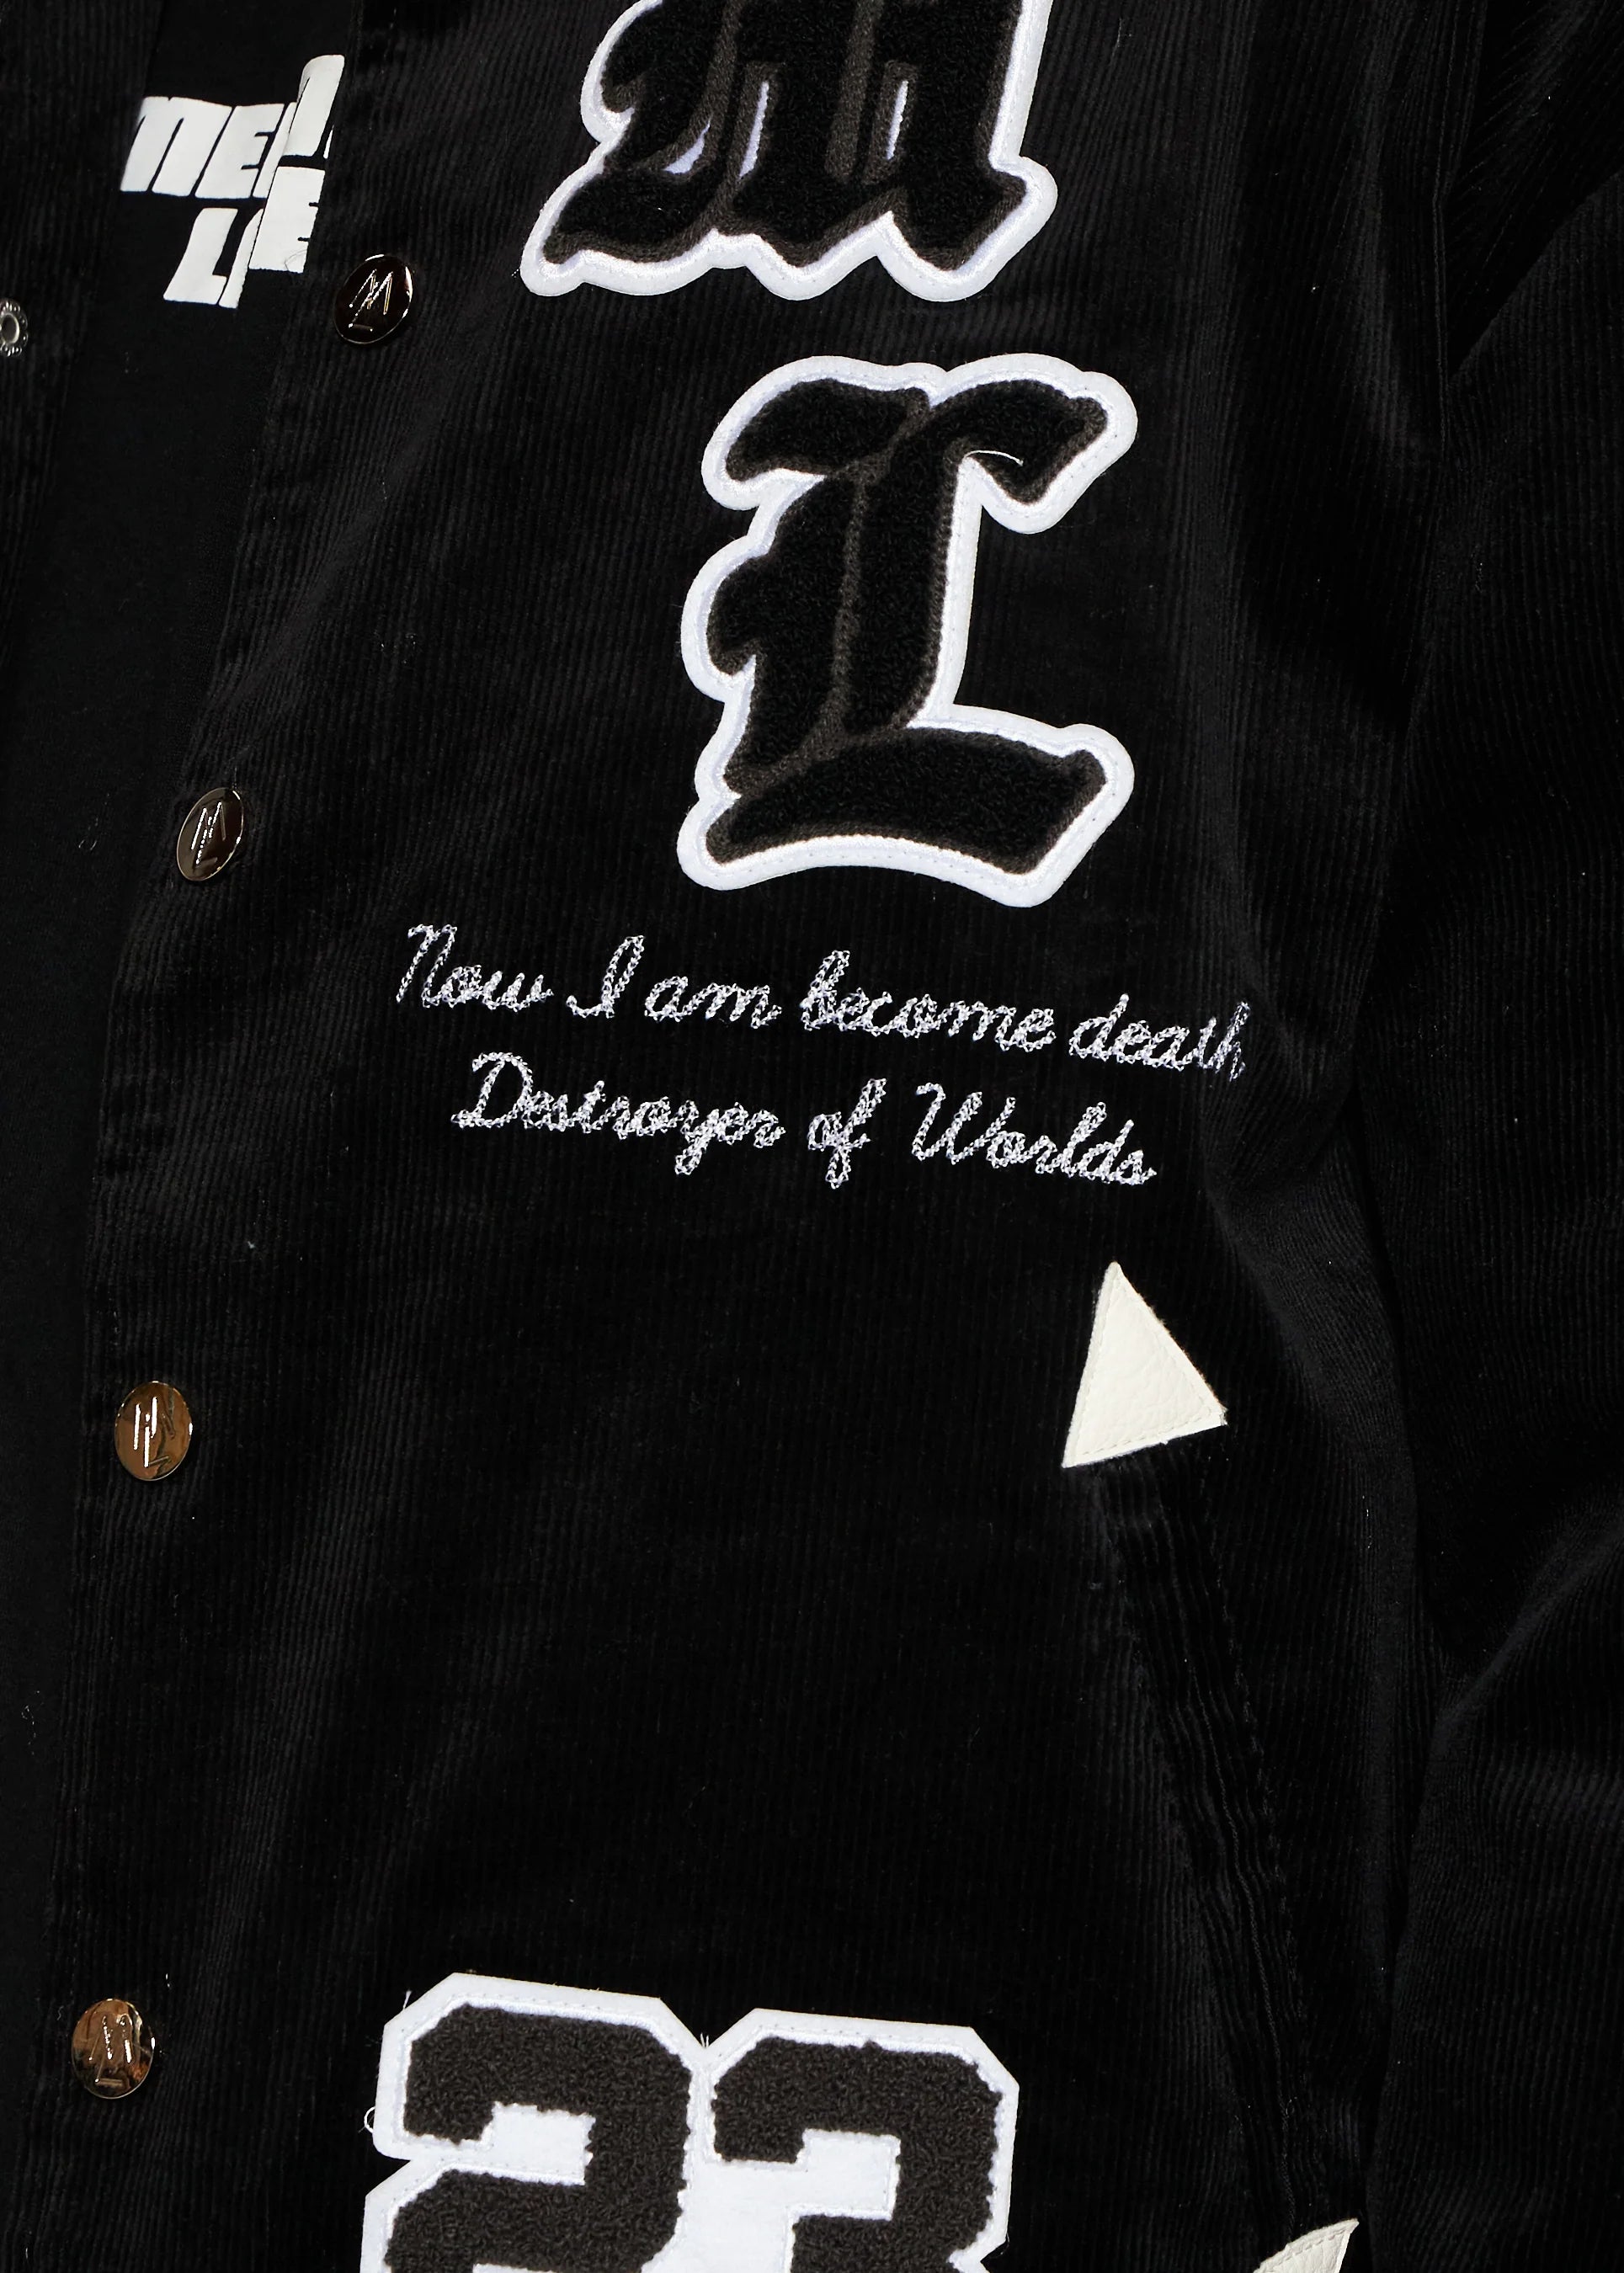 Ramsy Letterman Jacket